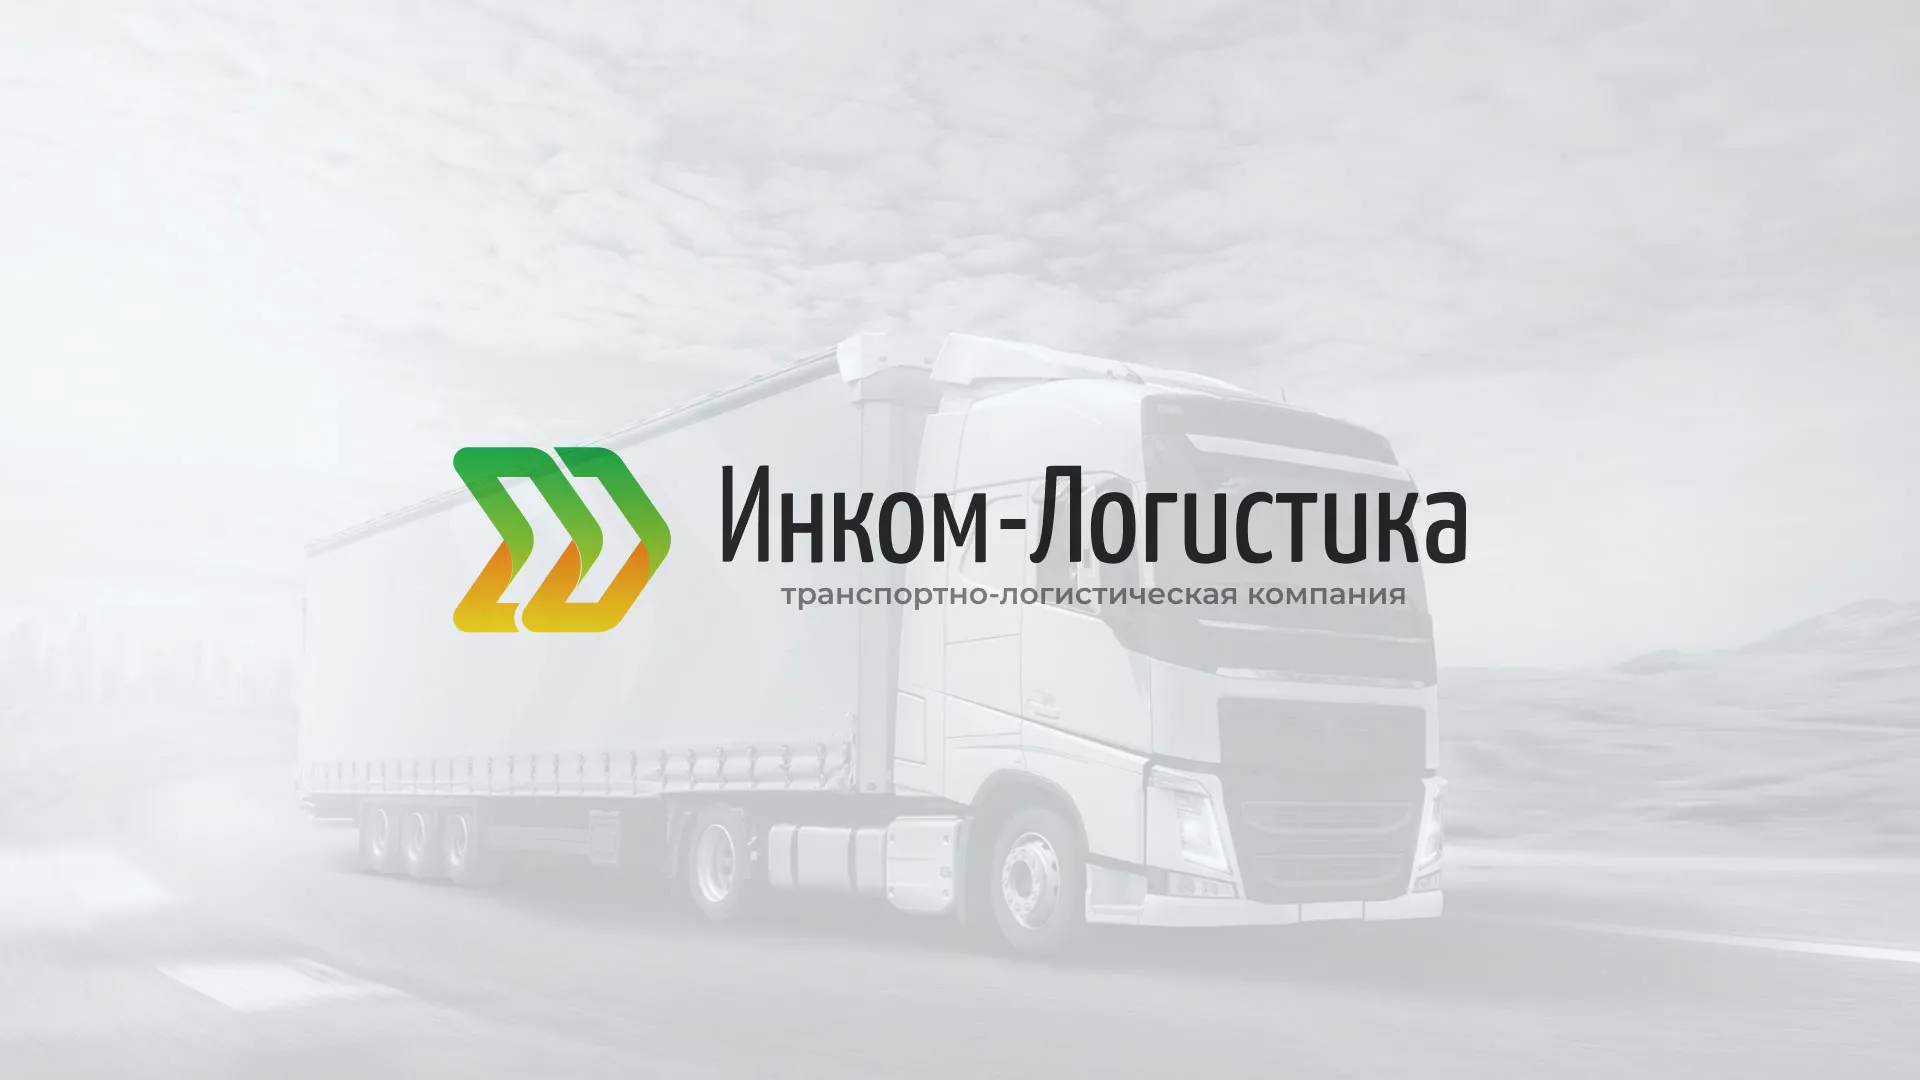 Разработка логотипа и сайта компании «Инком-Логистика» в Усть-Каменогорске